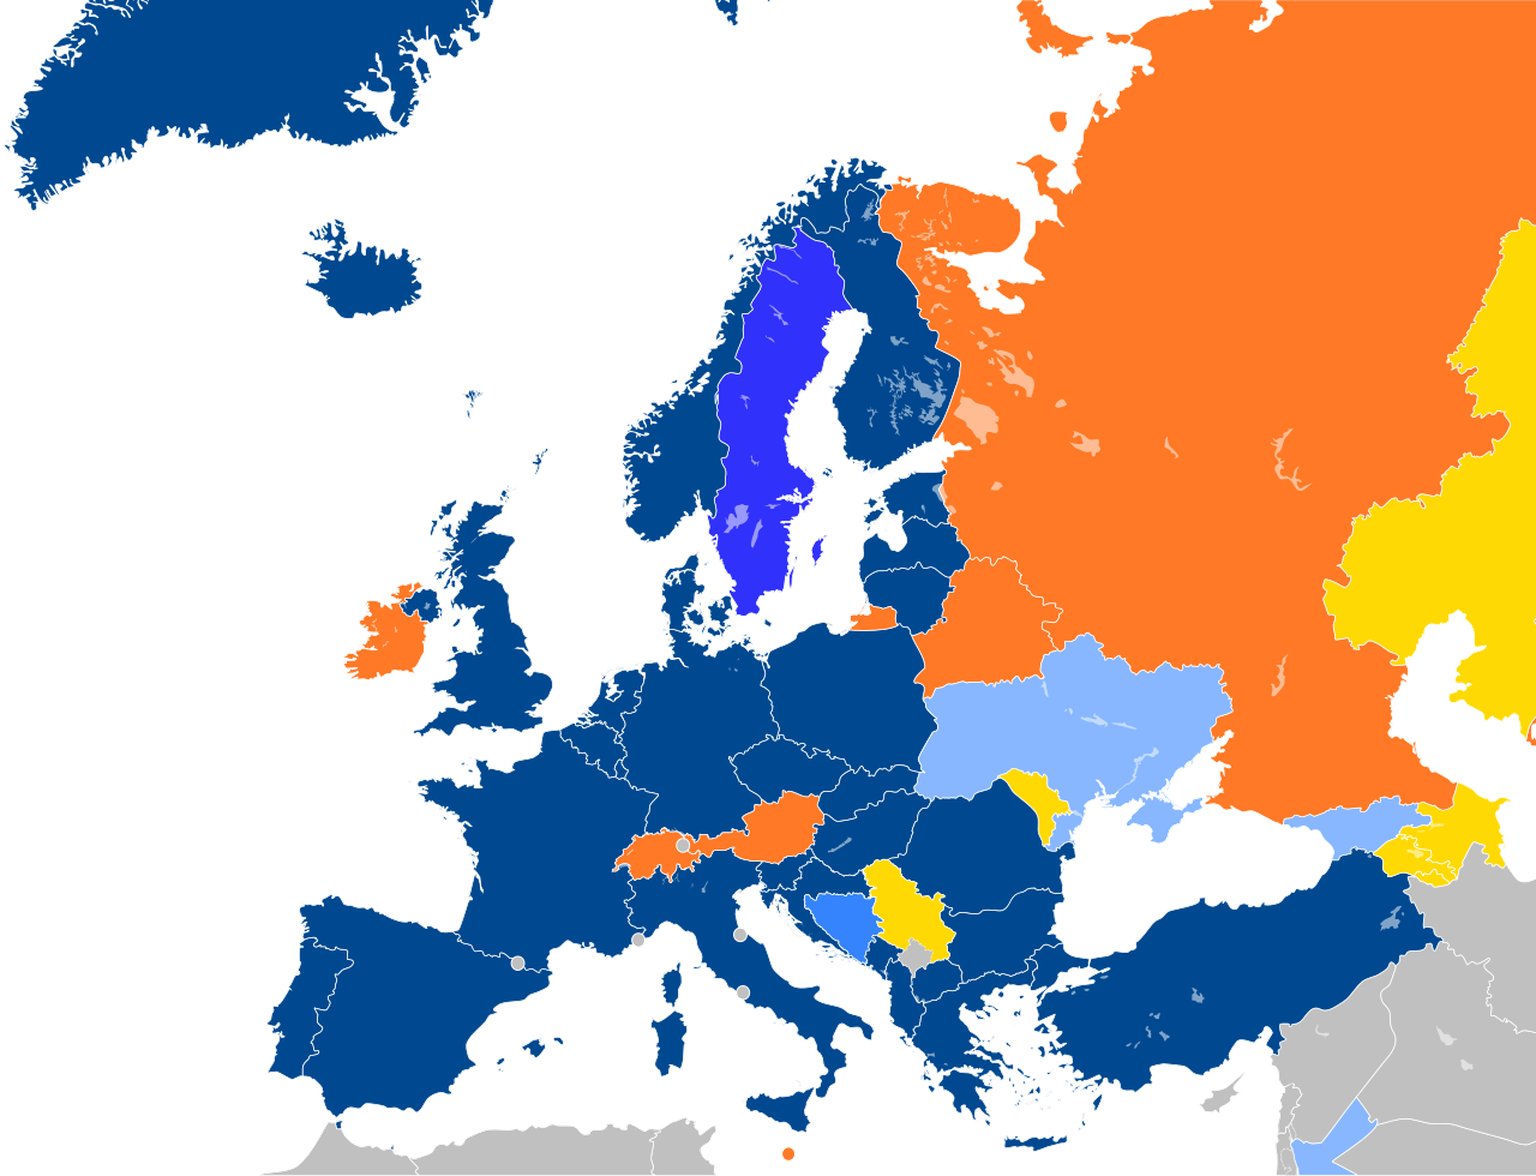 Aktuelle Zugehörigkeiten europäischer Länder zur Nordatlantikpakt-Organisation (NATO).
https://de.wikipedia.org/wiki/NATO#/media/Datei:Major_NATO_affiliations_in_Europe.svg